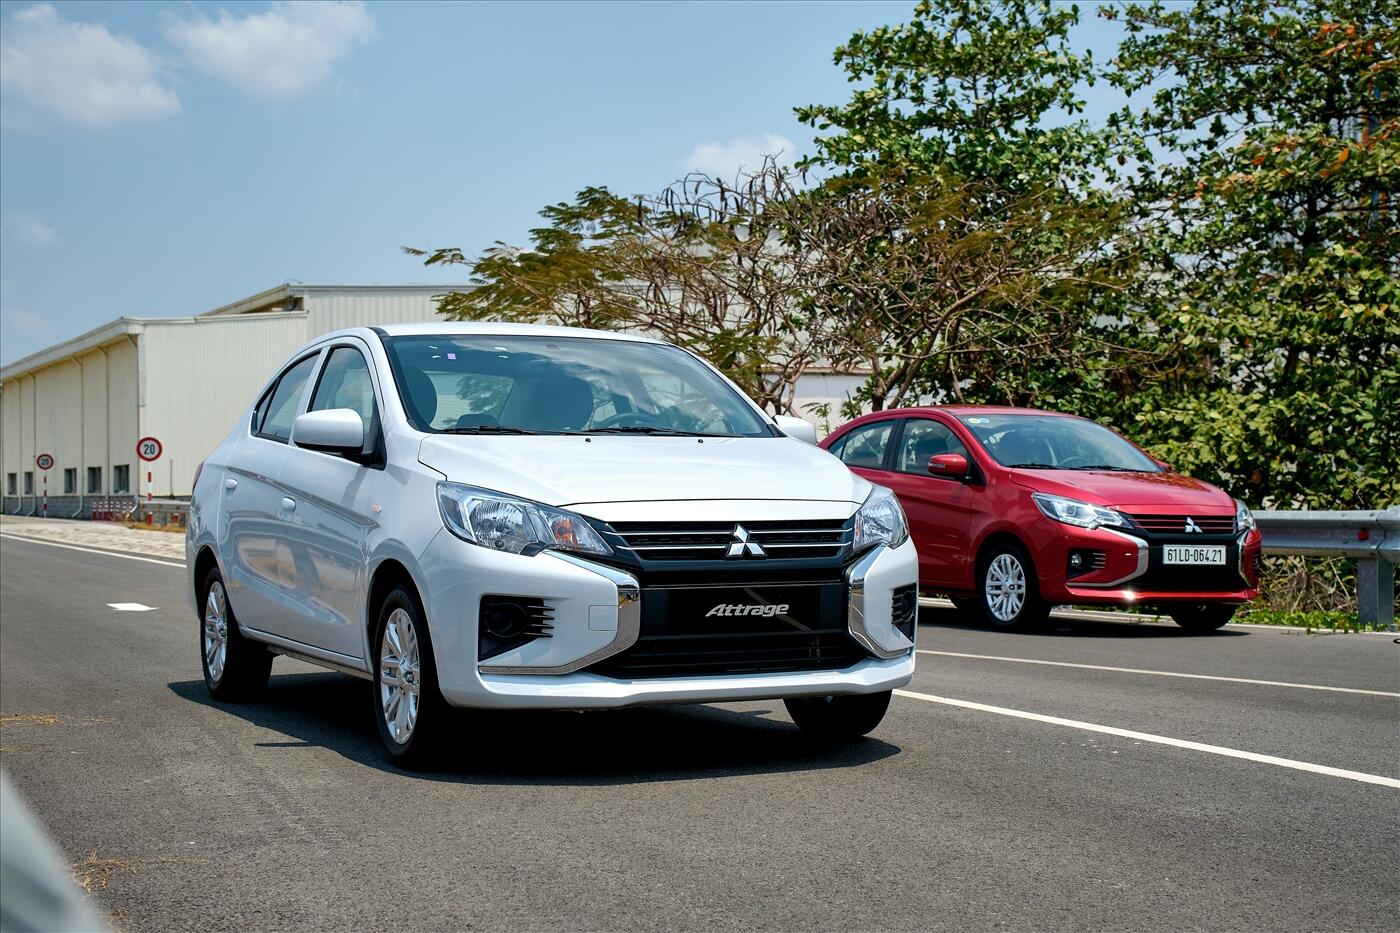 Mitsubishi Motors Việt Nam  Mitsubishi Attrage 2020  Khởi Đầu Vững Chắc  giá chỉ từ 375 triệu VNĐ